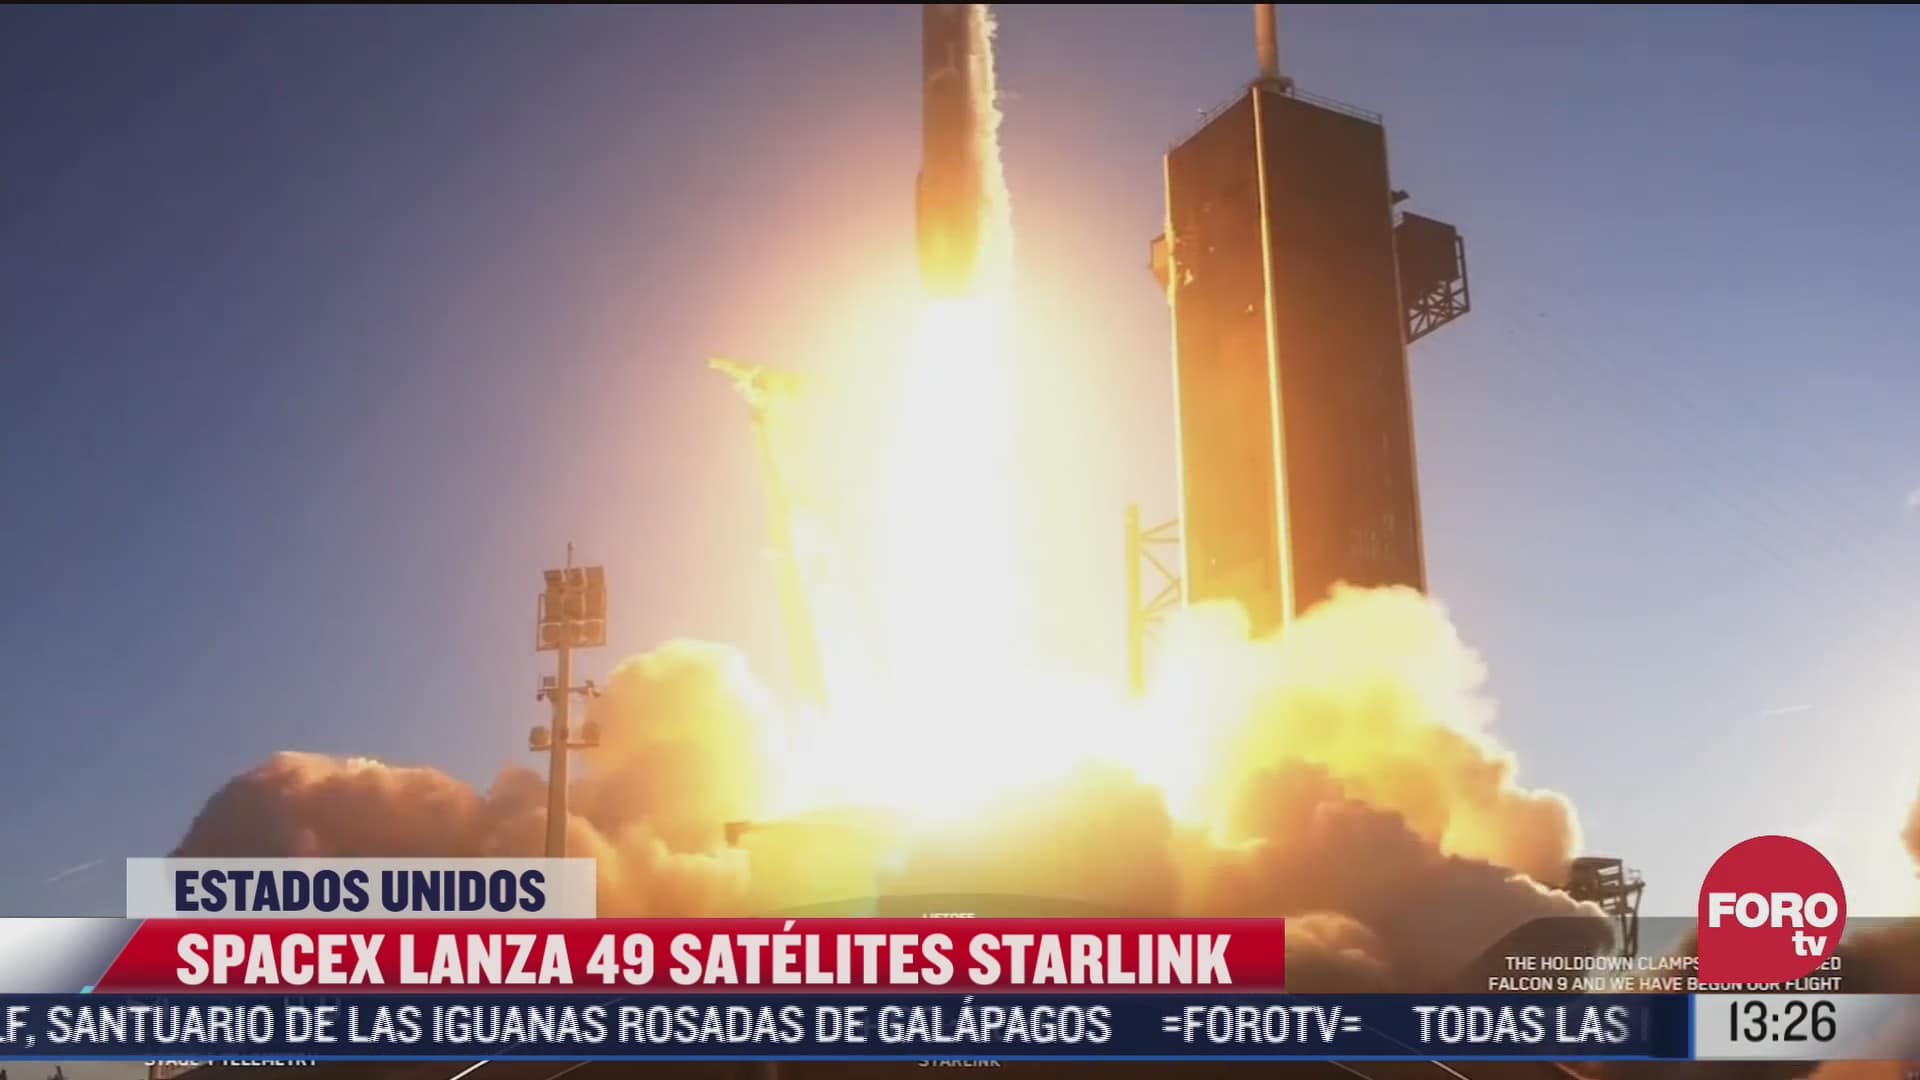 spacex lanza 49 satelites de starlink al espacio